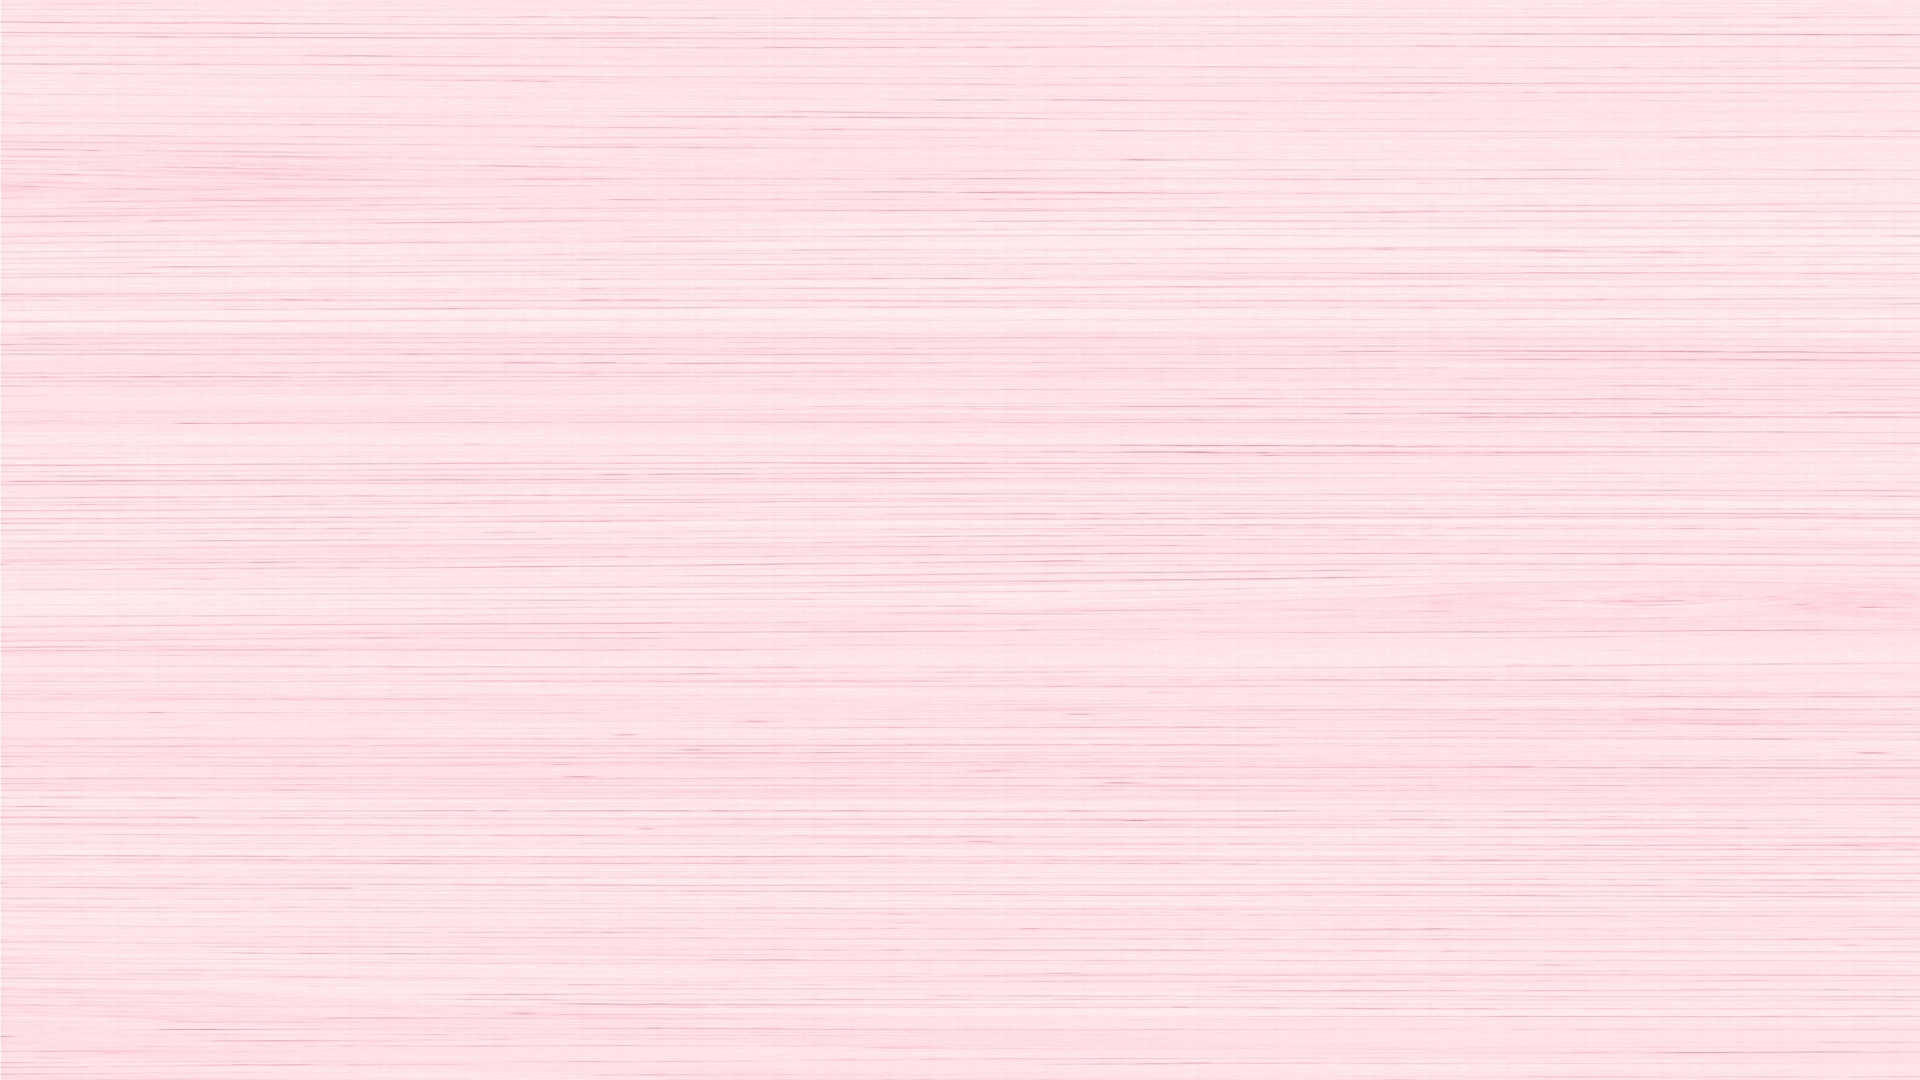 Hình Nền Màu Hồng Nhạt (Light Pink Wallpaper): Tìm kiếm một hình nền mới để khiến cho điện thoại của bạn tươi mới và đầy sức sống? Hãy lựa chọn một bức ảnh nền màu hồng nhạt này. Sự nhẹ nhàng, dịu dàng của màu sắc sẽ mang đến cho bạn cảm giác yên tĩnh và thư thái. Hãy để bức ảnh này giúp cho bạn cảm thấy thật sự thoải mái.